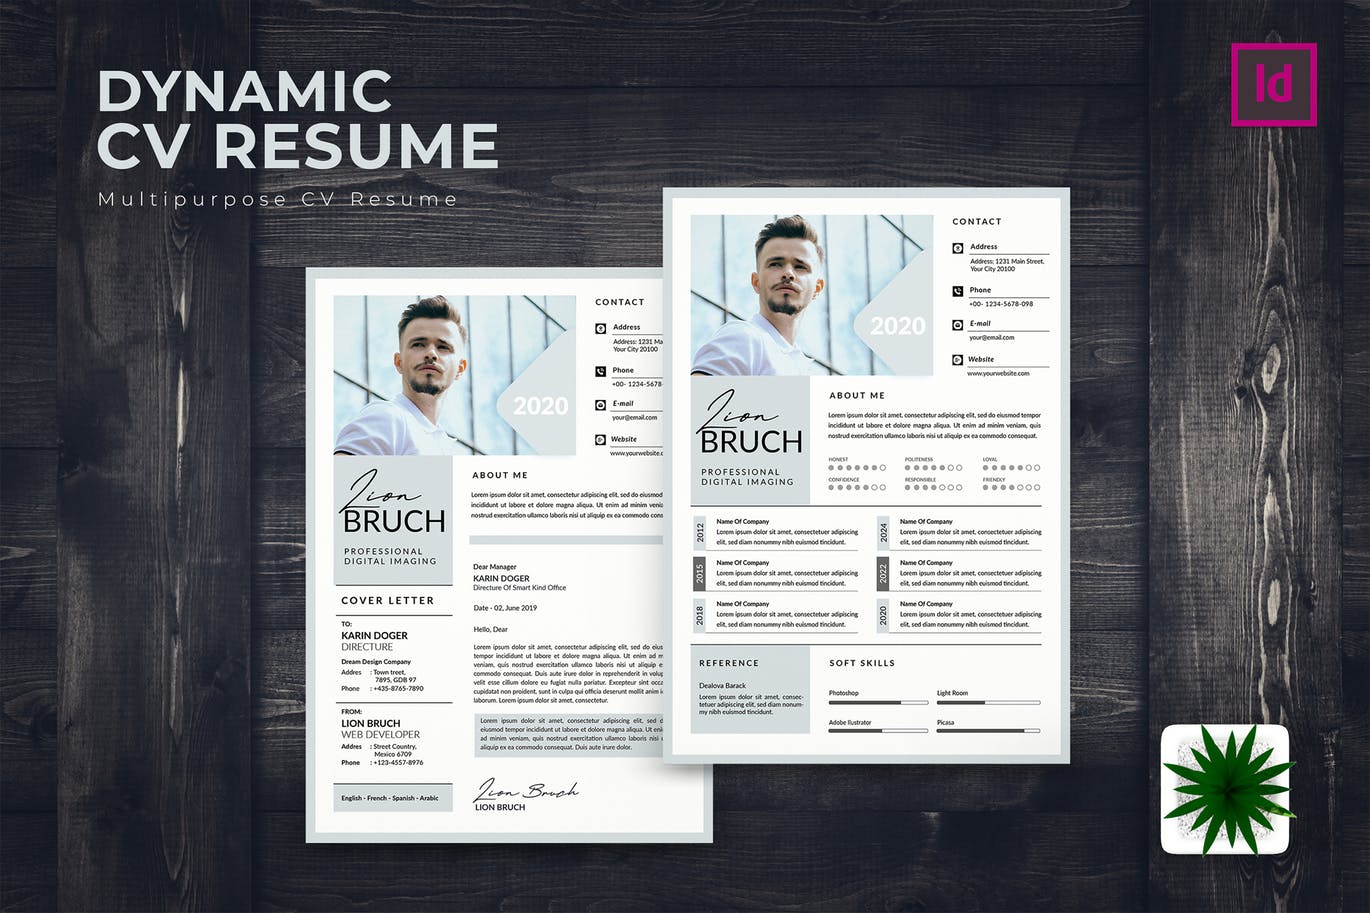 专业图形设计师电子蚂蚁素材精选简历模板 Dynamic CV Resume插图